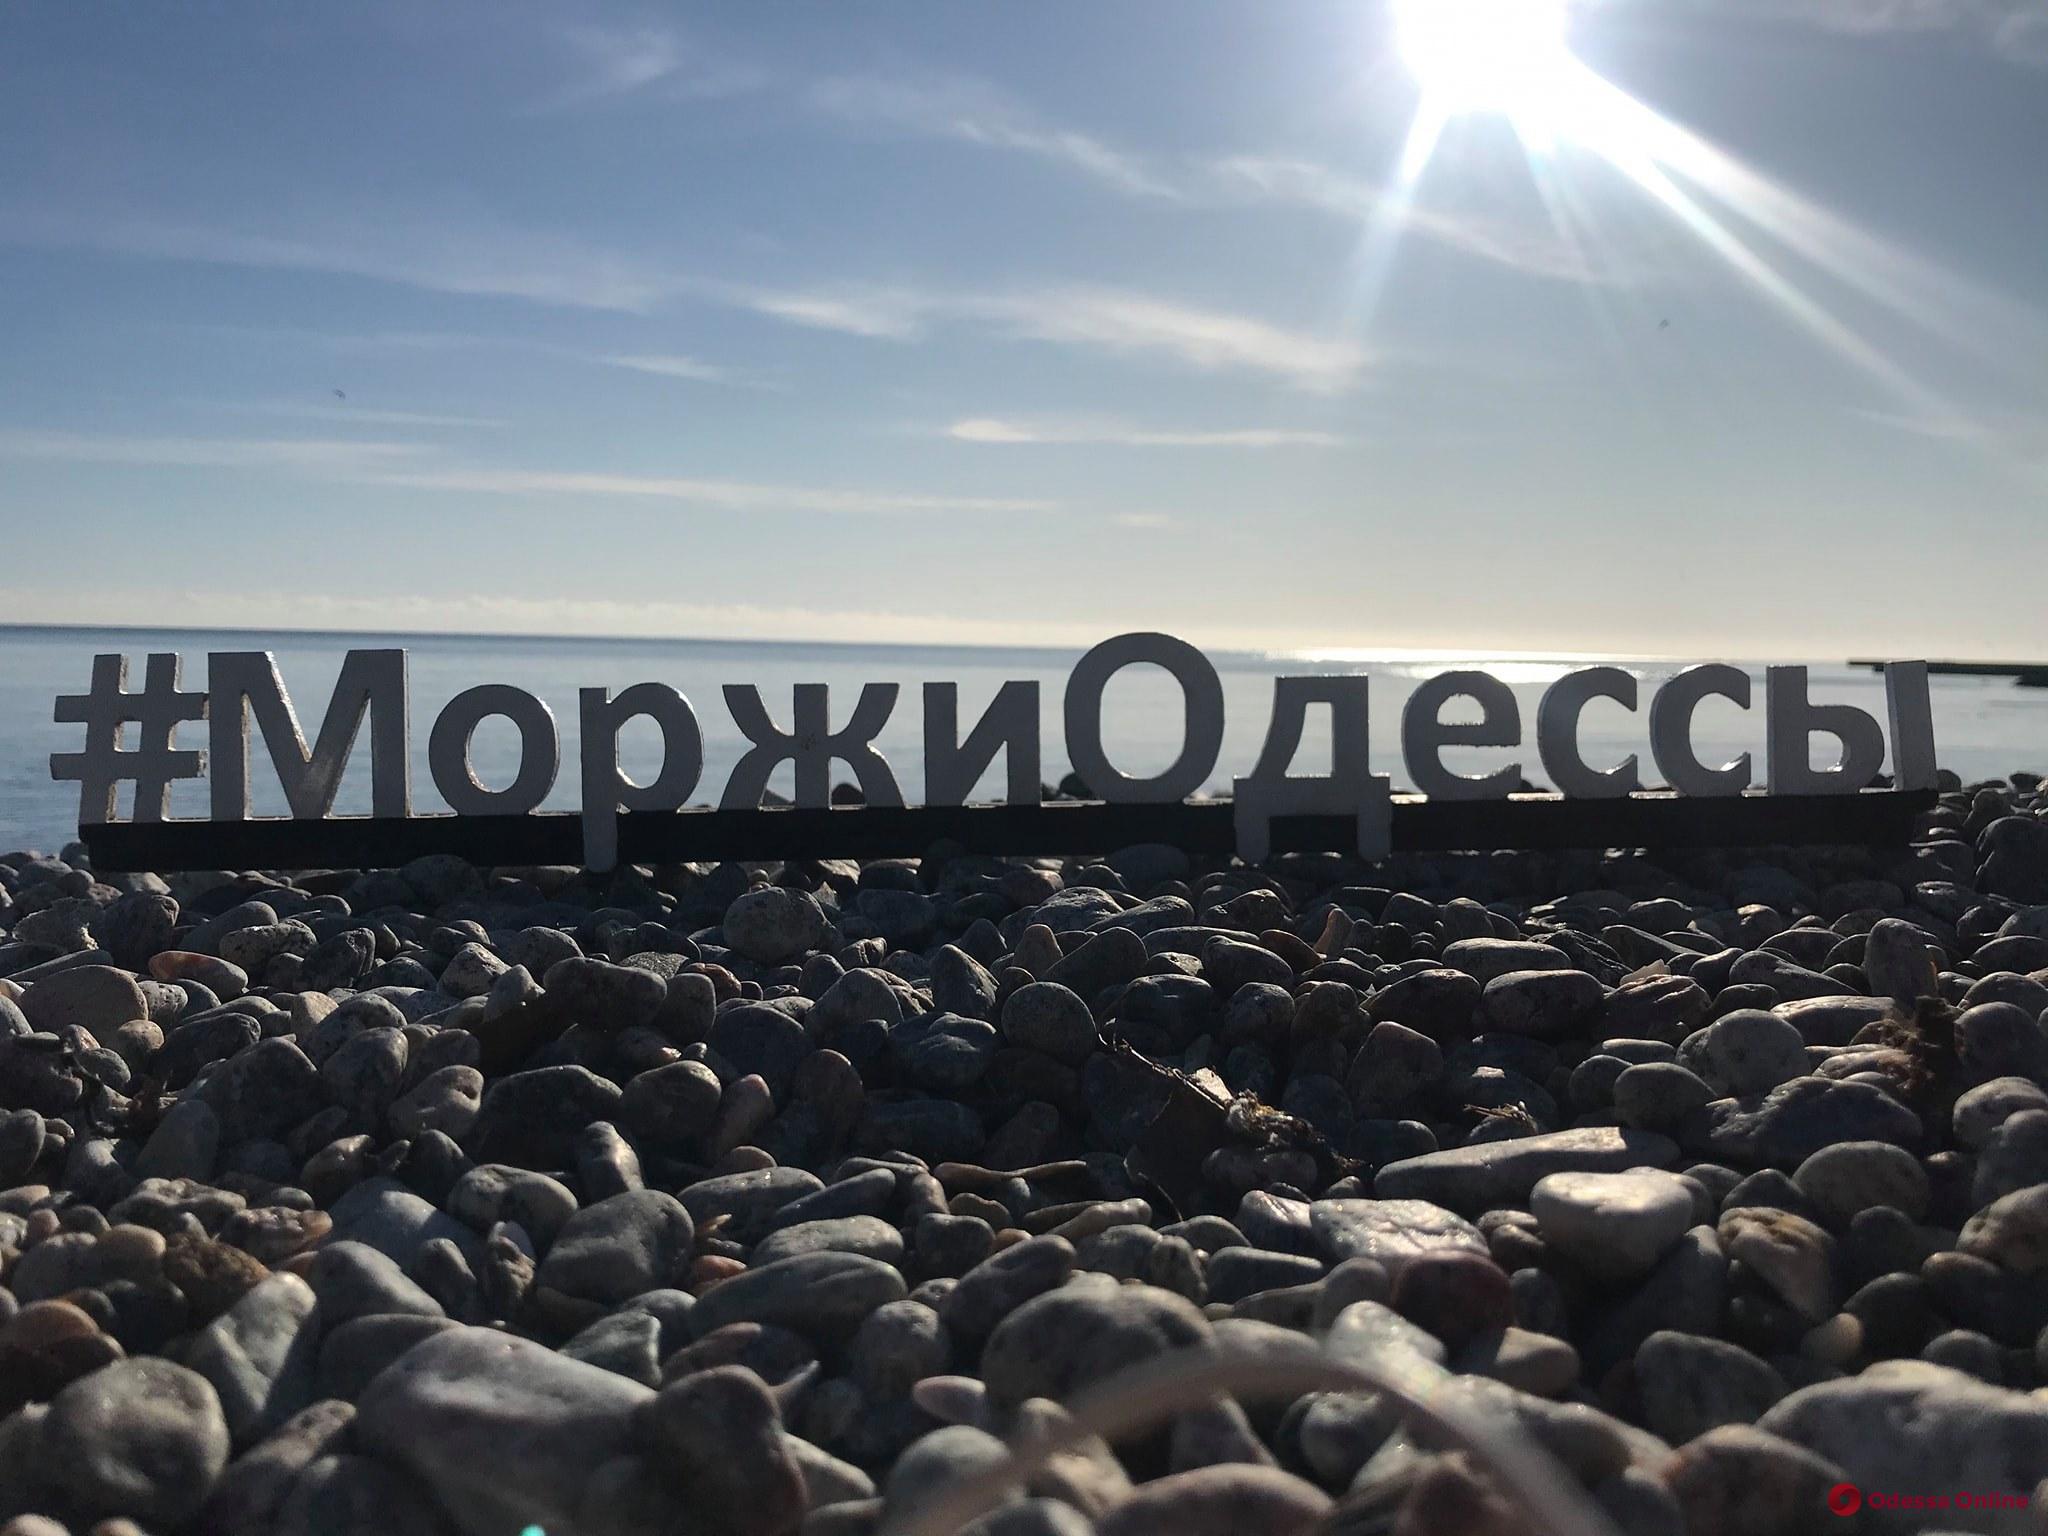 Одесские «моржи» открыли новый купальный сезон (фото)